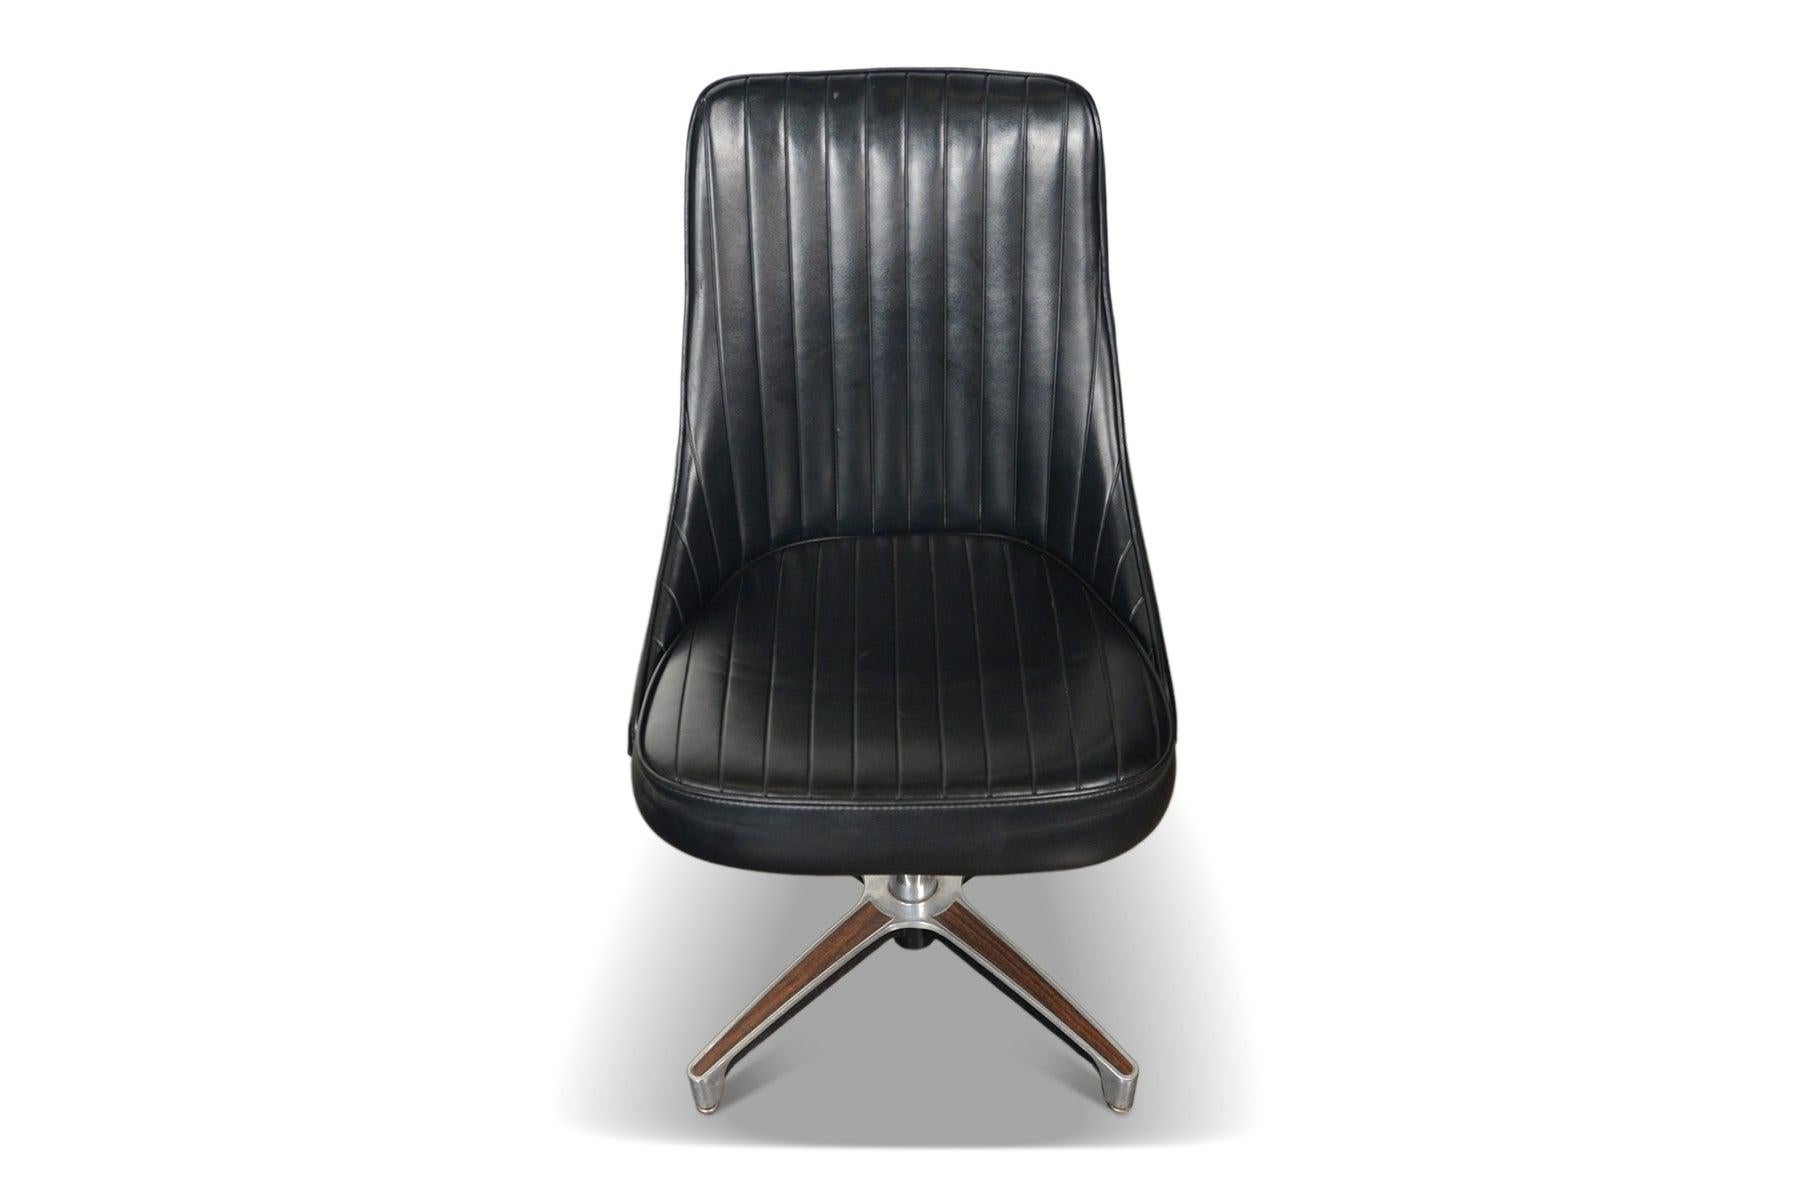 Ensemble de chaises longues Chromcraft des années 1960, parfaites pour l'époque.  Cet ensemble porte son vinyle noir d'origine, avec des sièges reposant sur des bases pivotantes en aluminium moulé avec des incrustations en stratifié de noyer. 

Ils